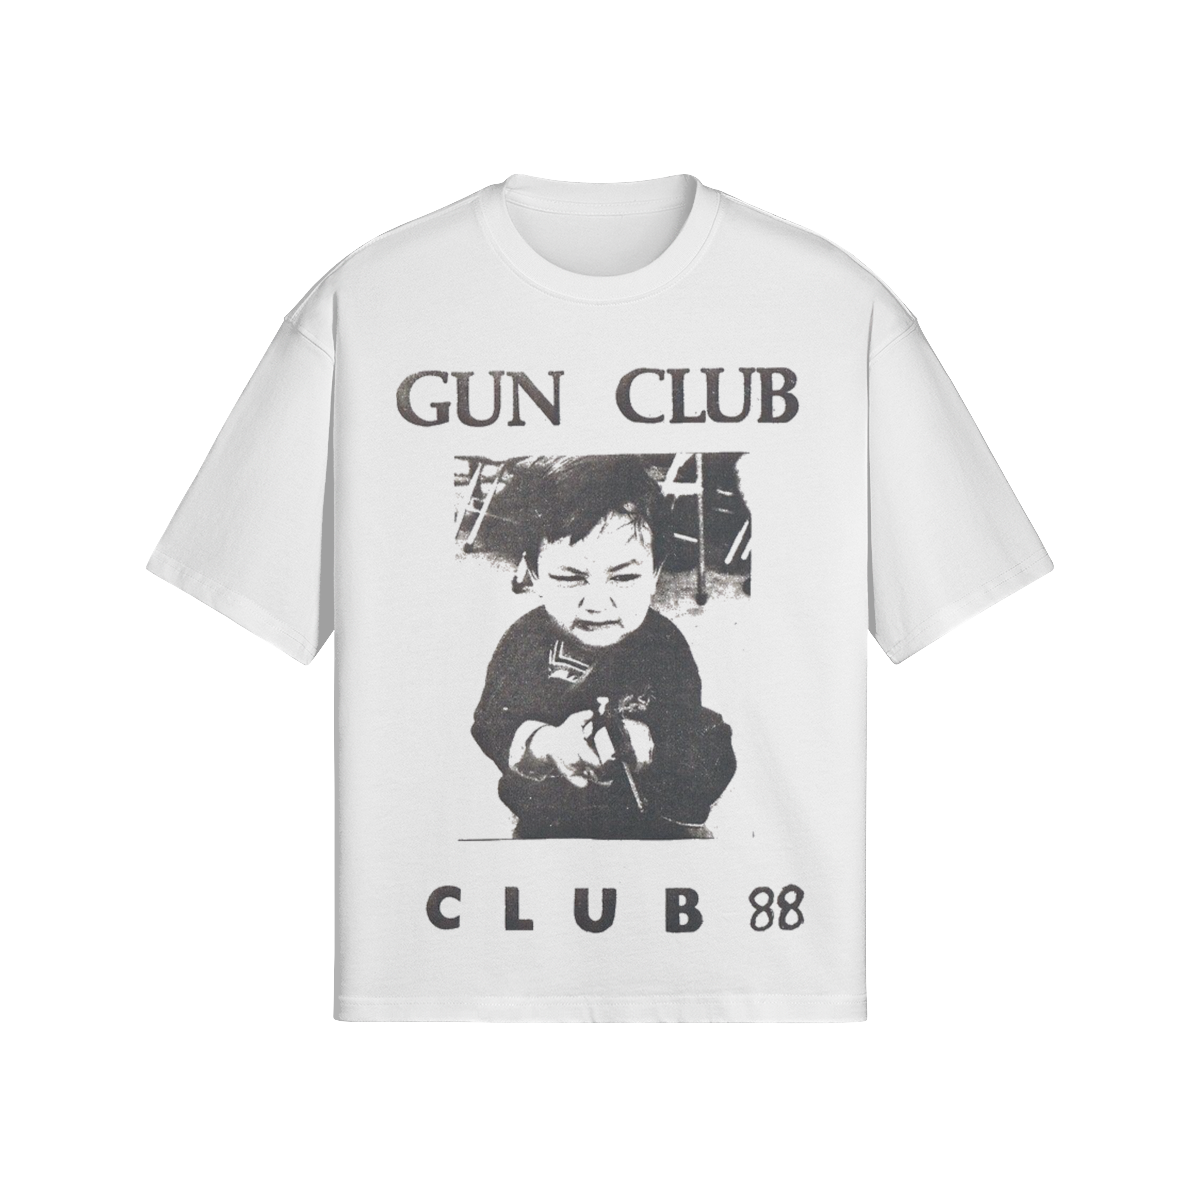 "Gun Club" Tee